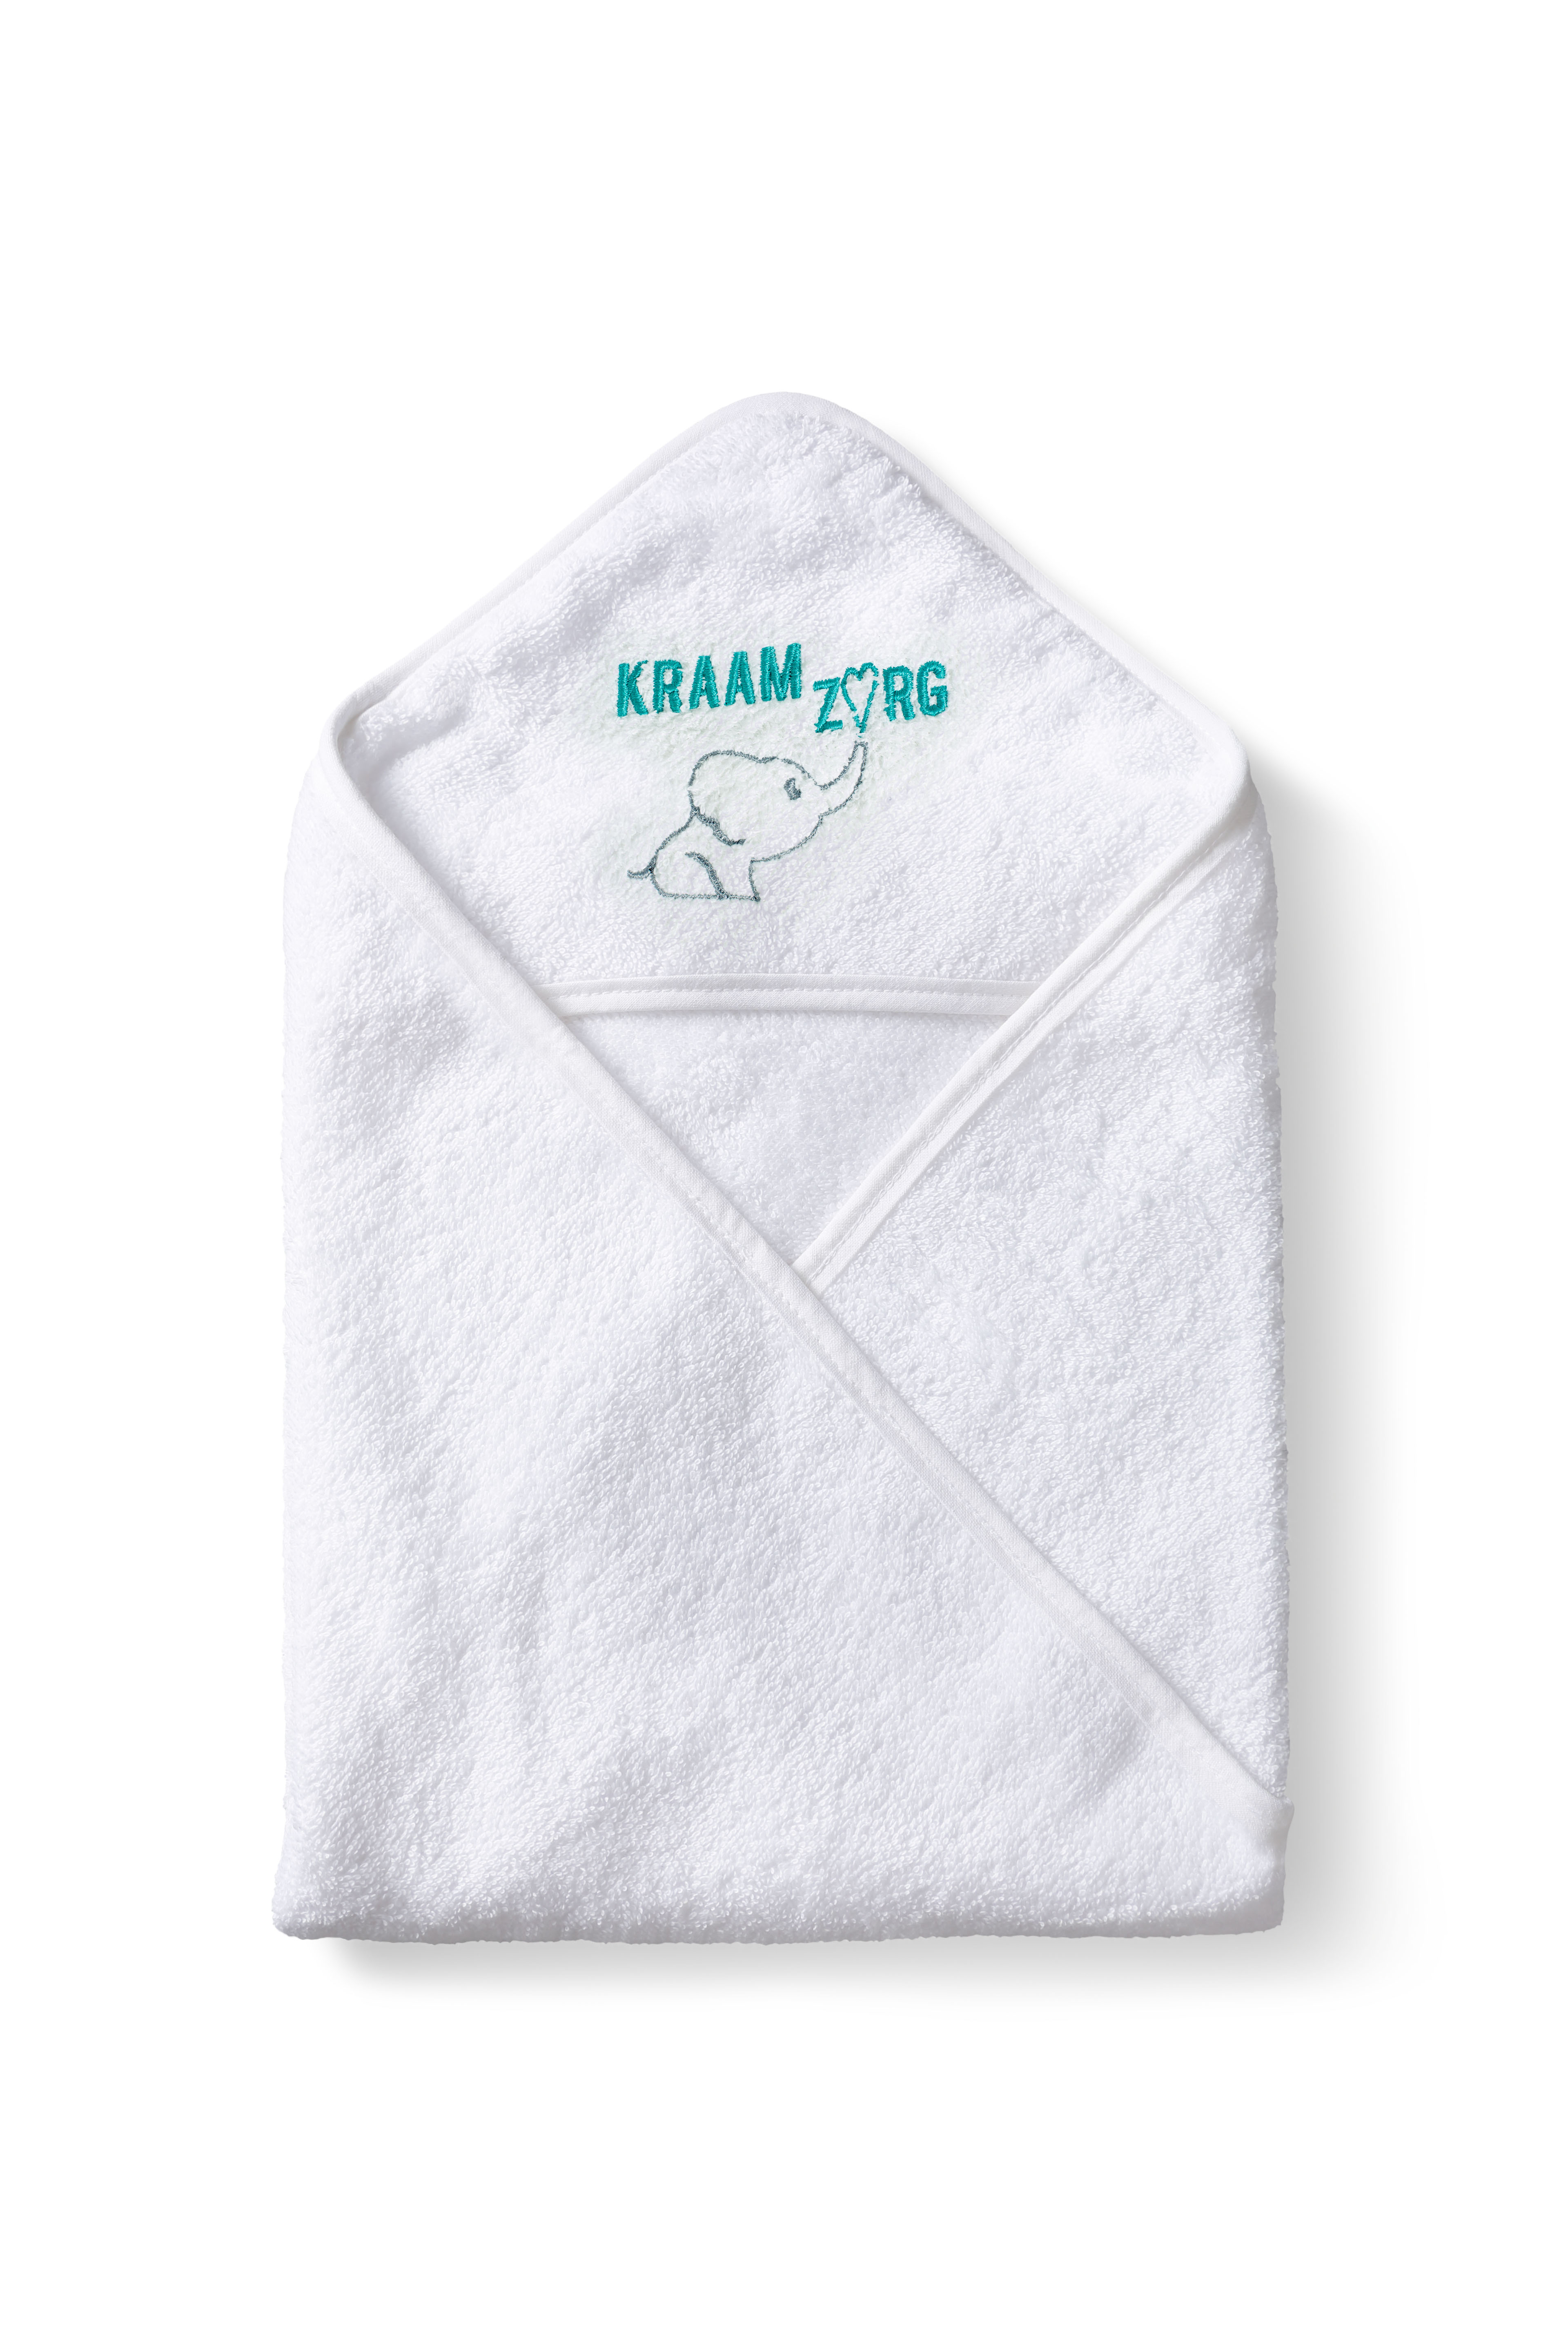 Una capa de baño de toalla de rizo que está certificada según la Norma Oeko-Tex 100 - Puddington - Sorzano